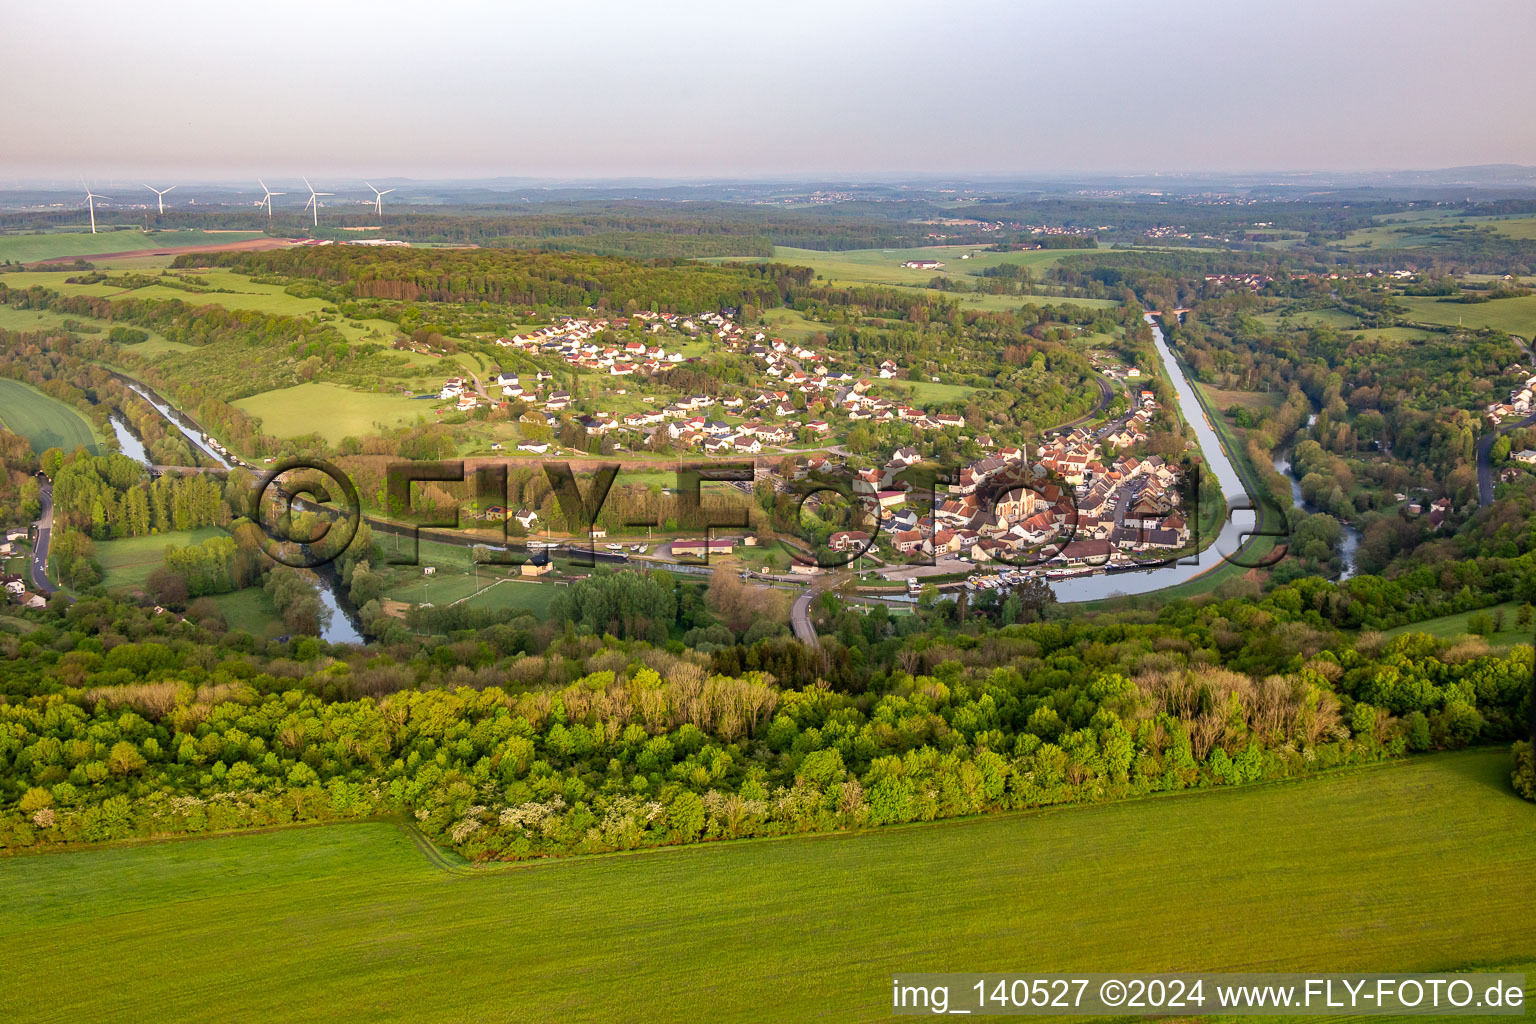 Vue aérienne de Du sud à Wittring dans le département Moselle, France